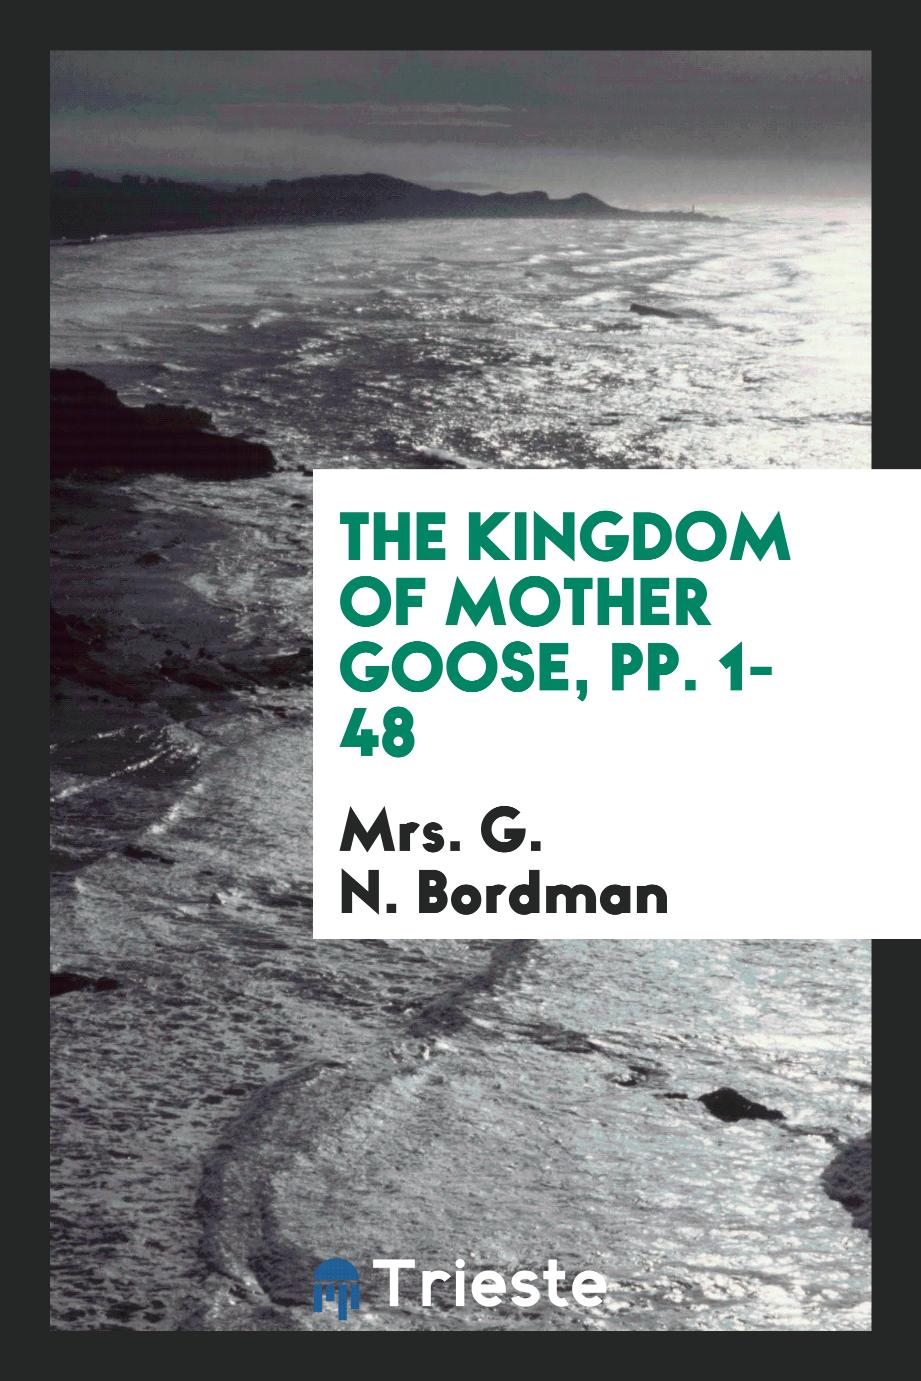 Mrs. G. N. Bordman - The Kingdom of Mother Goose, pp. 1-48